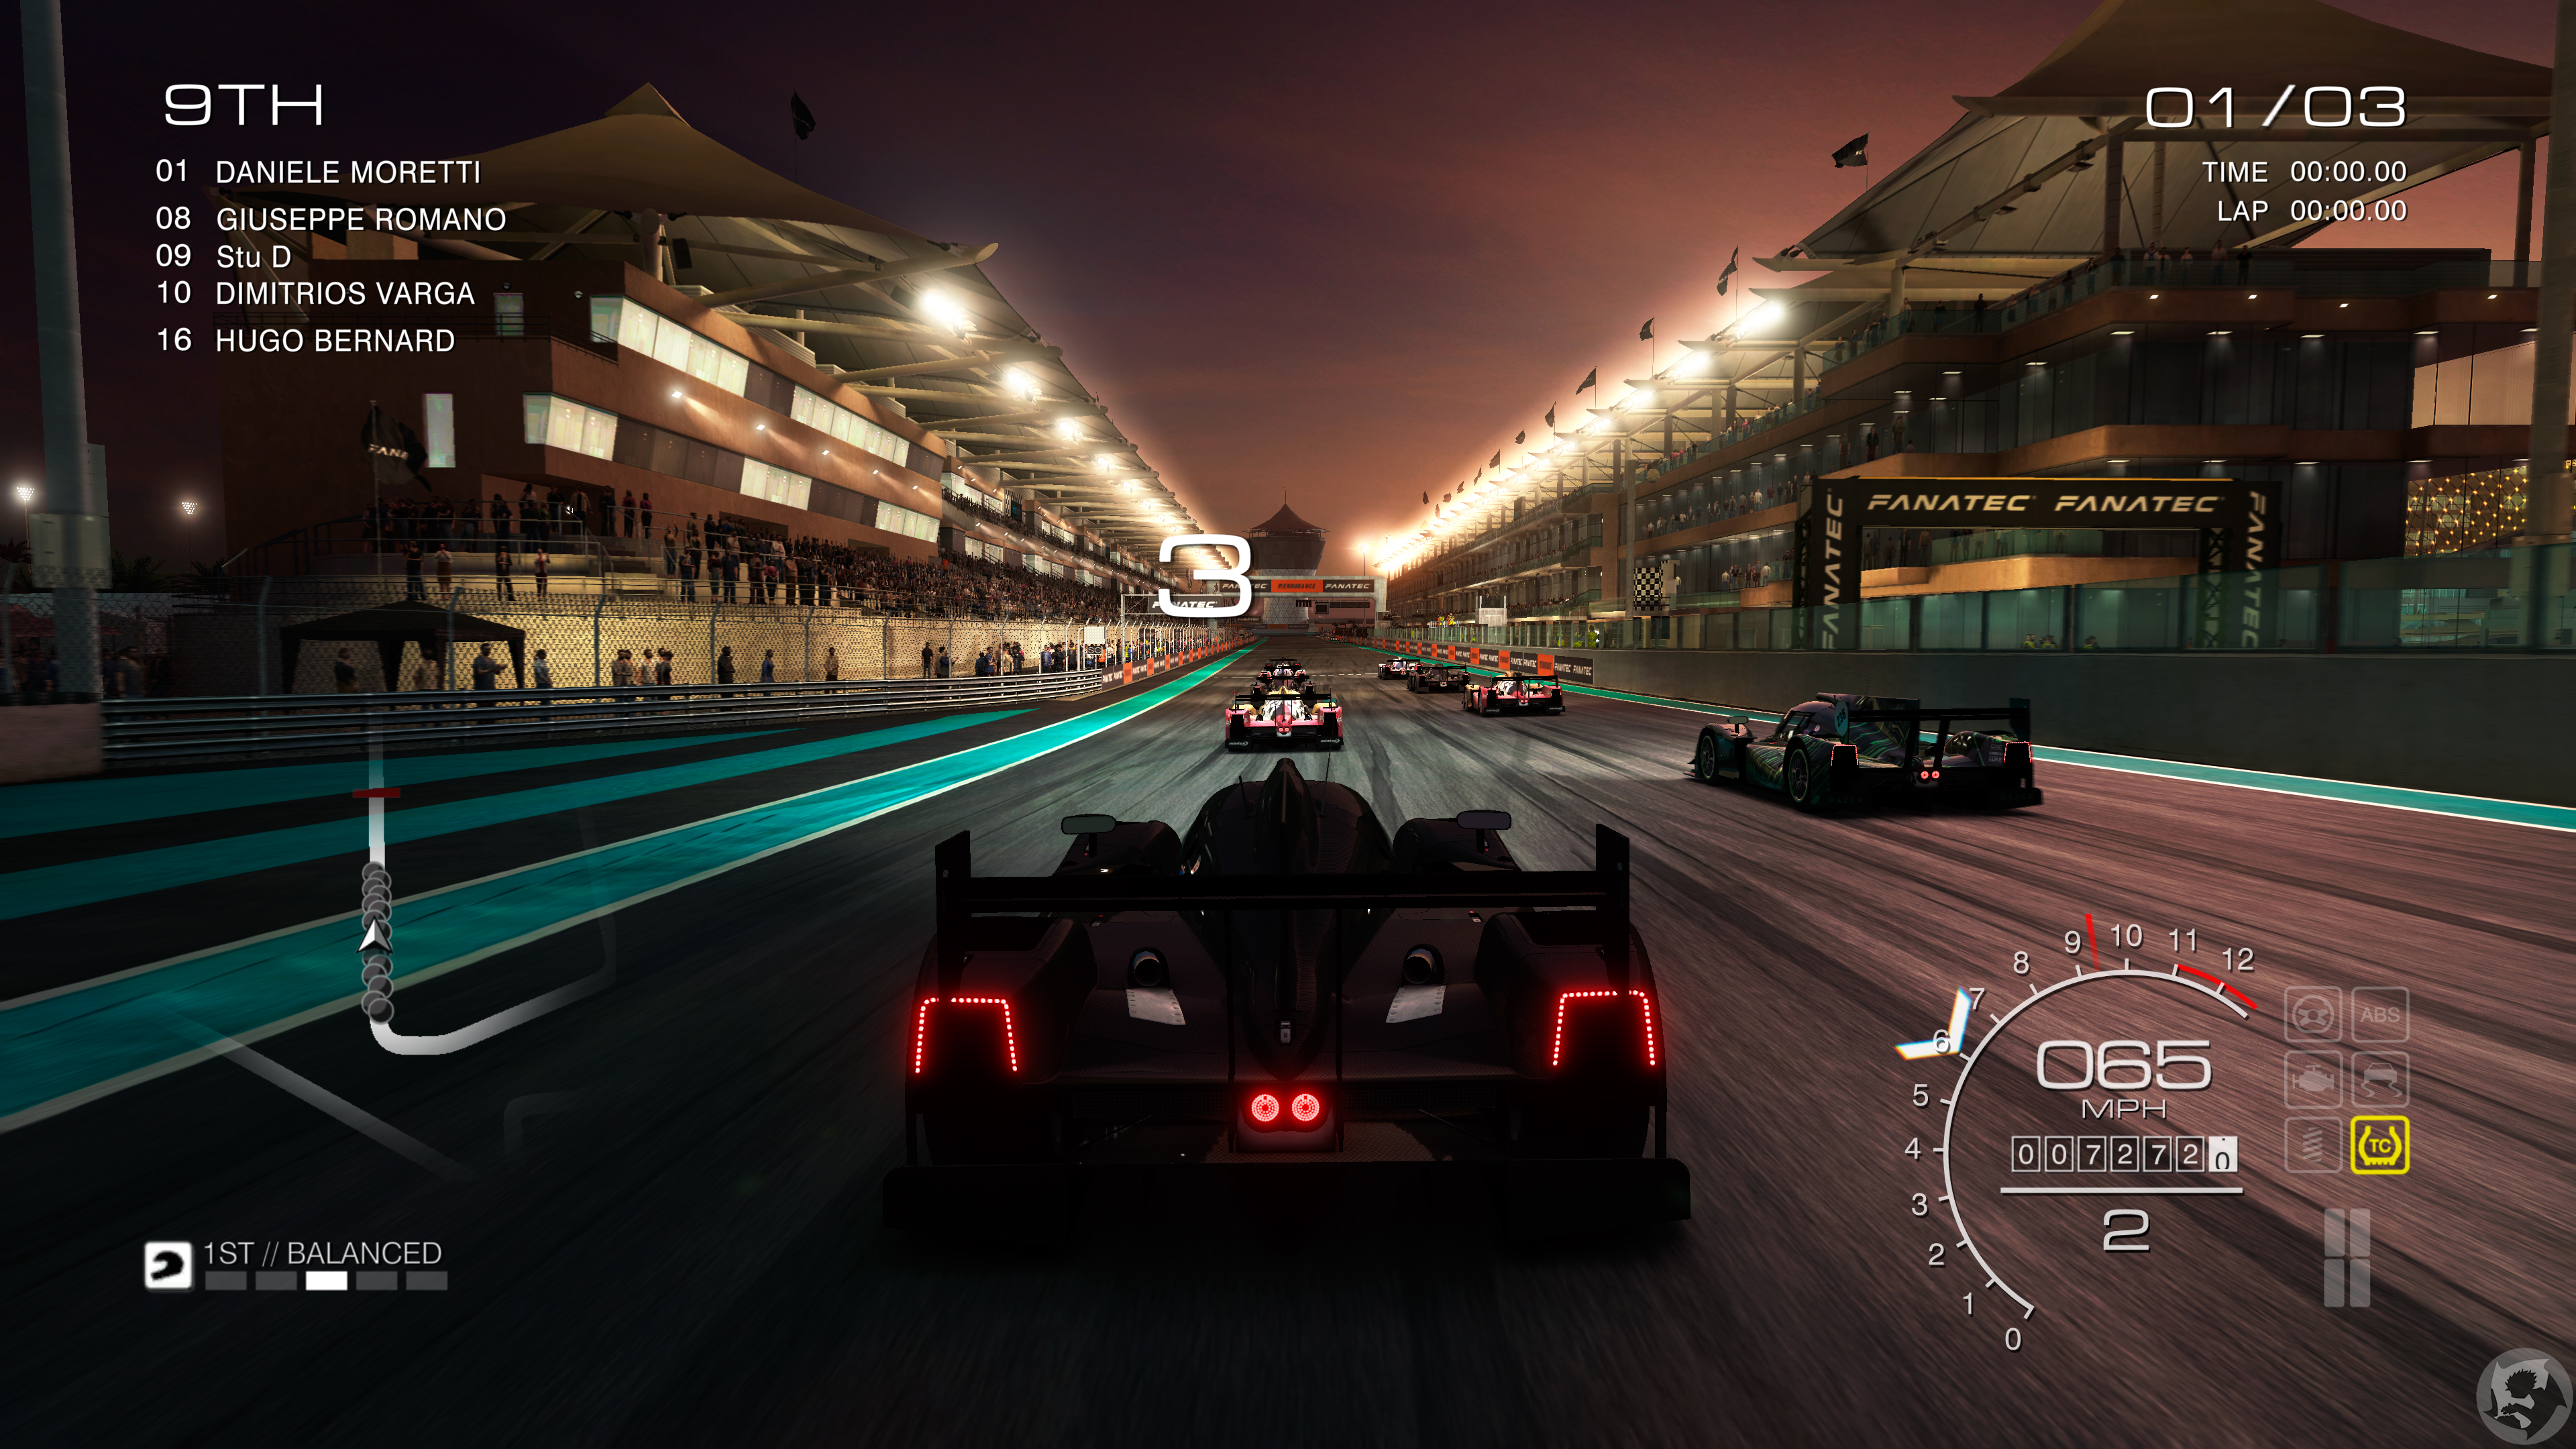 1080p grid autosport backgrounds